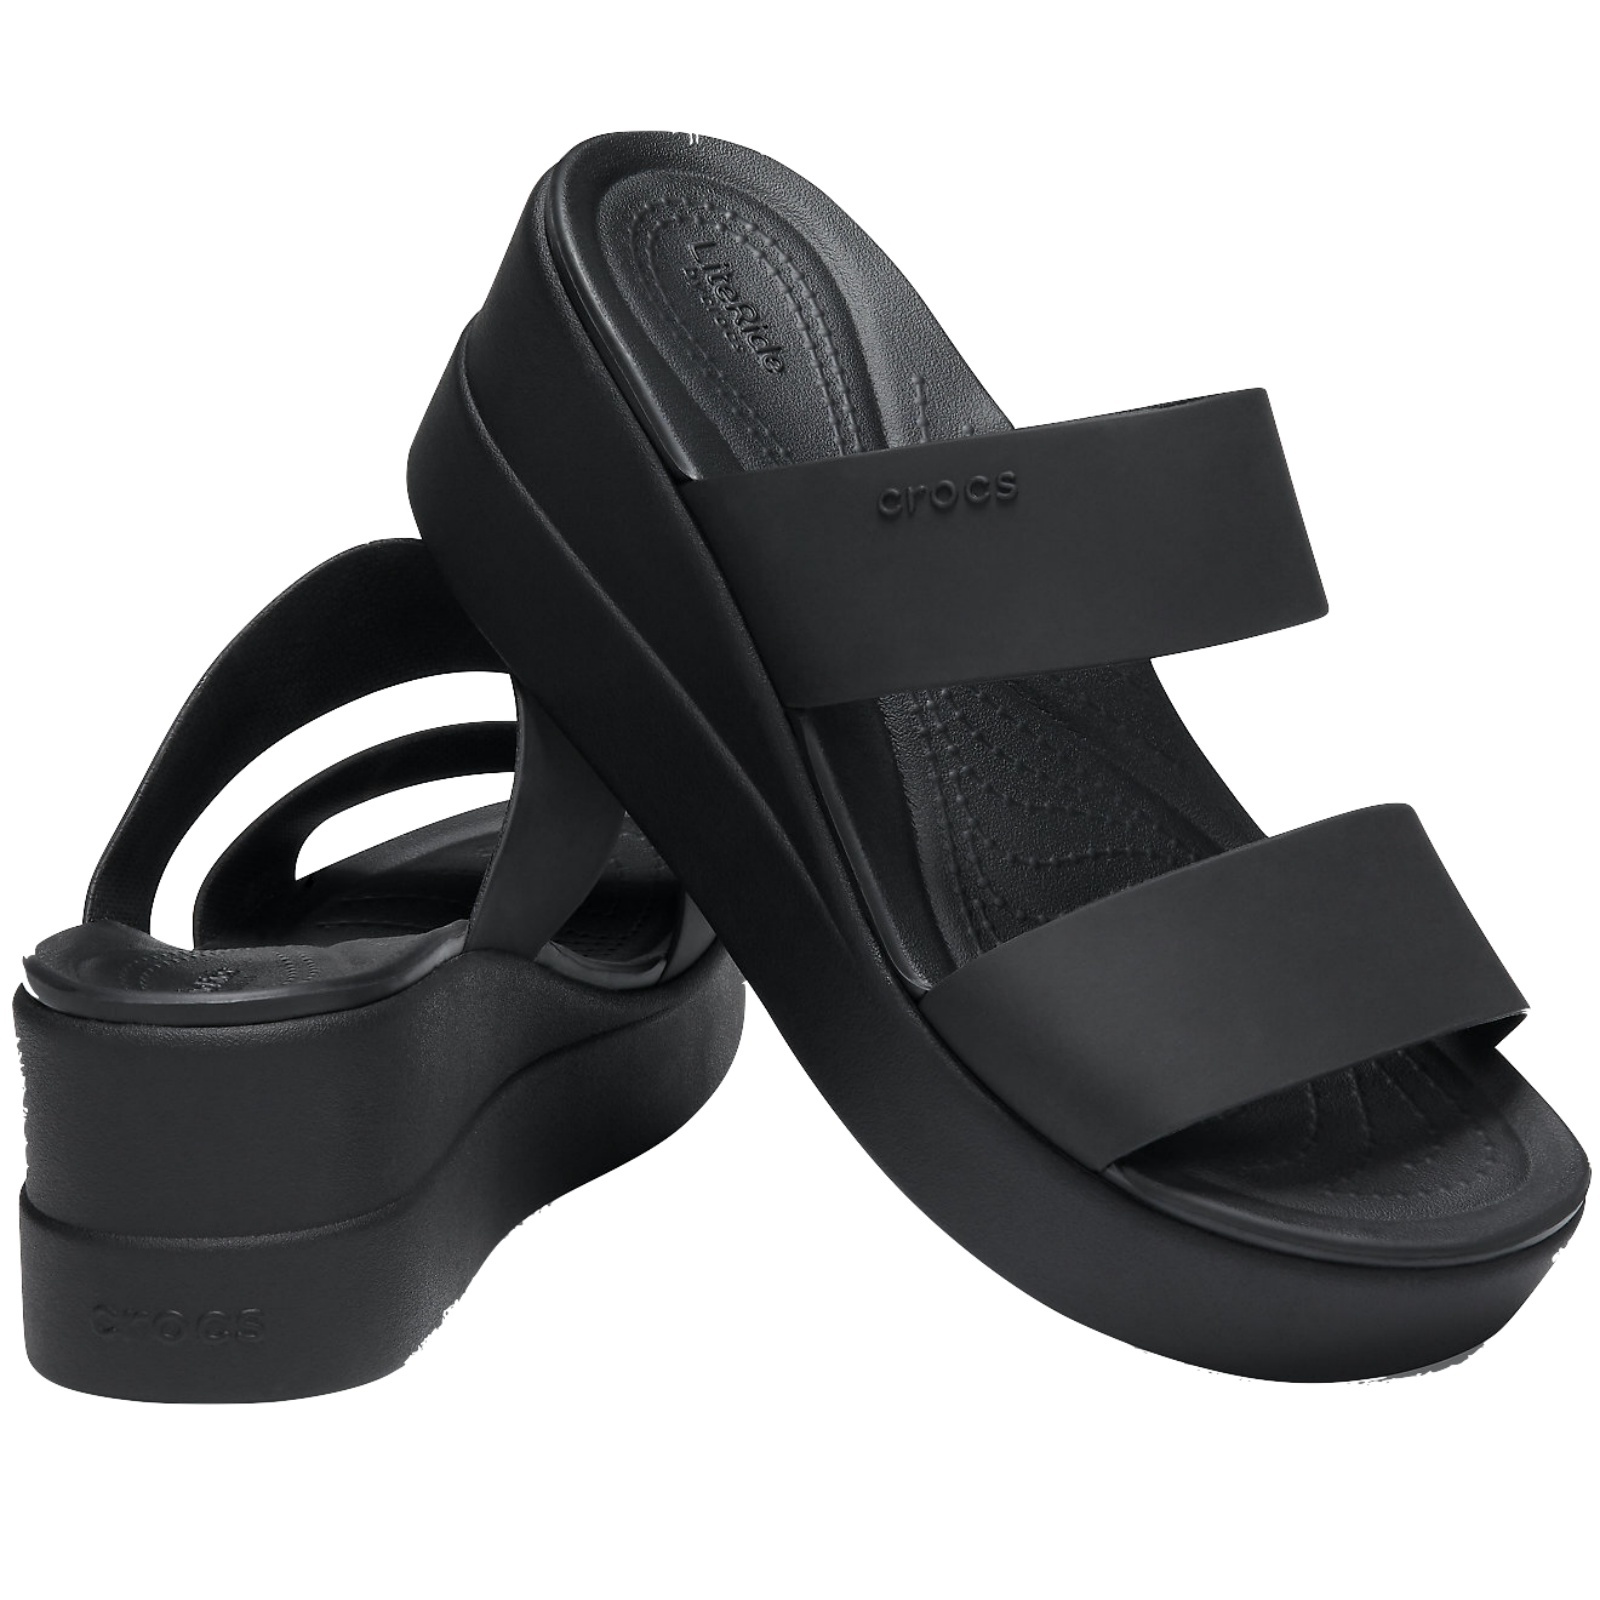 Crocs Brooklyn Mid Wedge Women's Shoes Wedges Heel Sandals LiteRide Black/Black